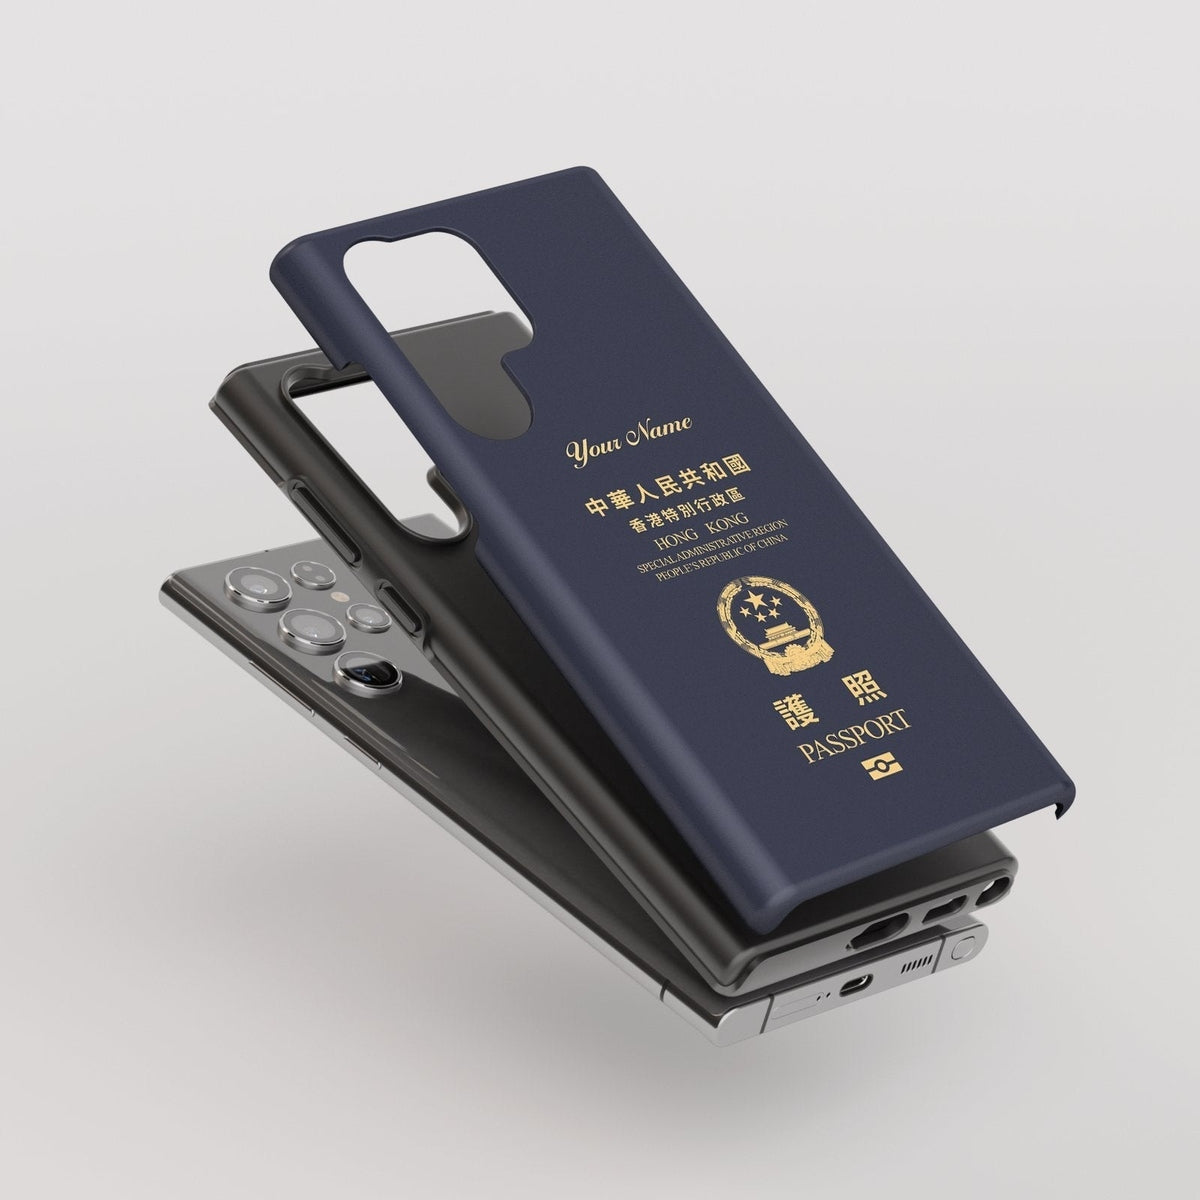 Hong Kong Passport - Samsung Galaxy S Case